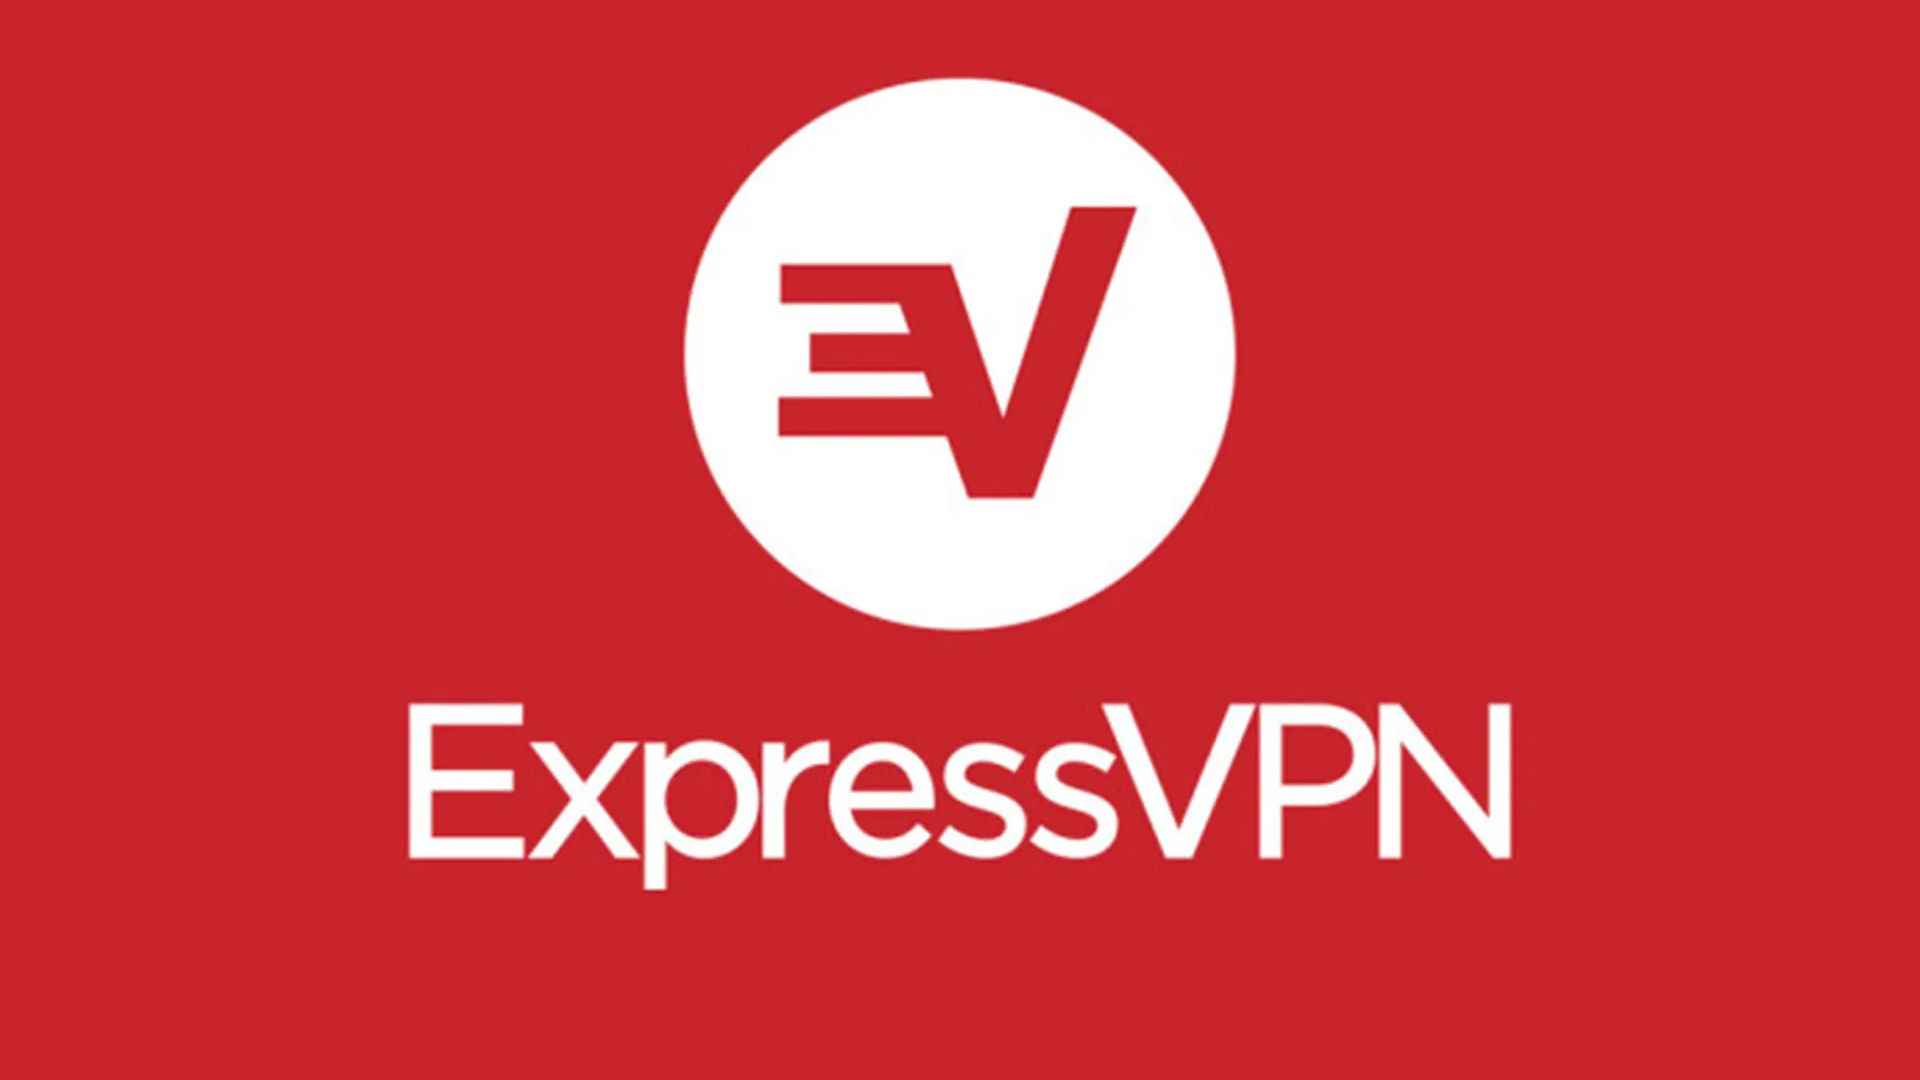 En İyi Kanada VPN'i - ExpressVPN.  Resim, işletmenin logosunu gösterir.